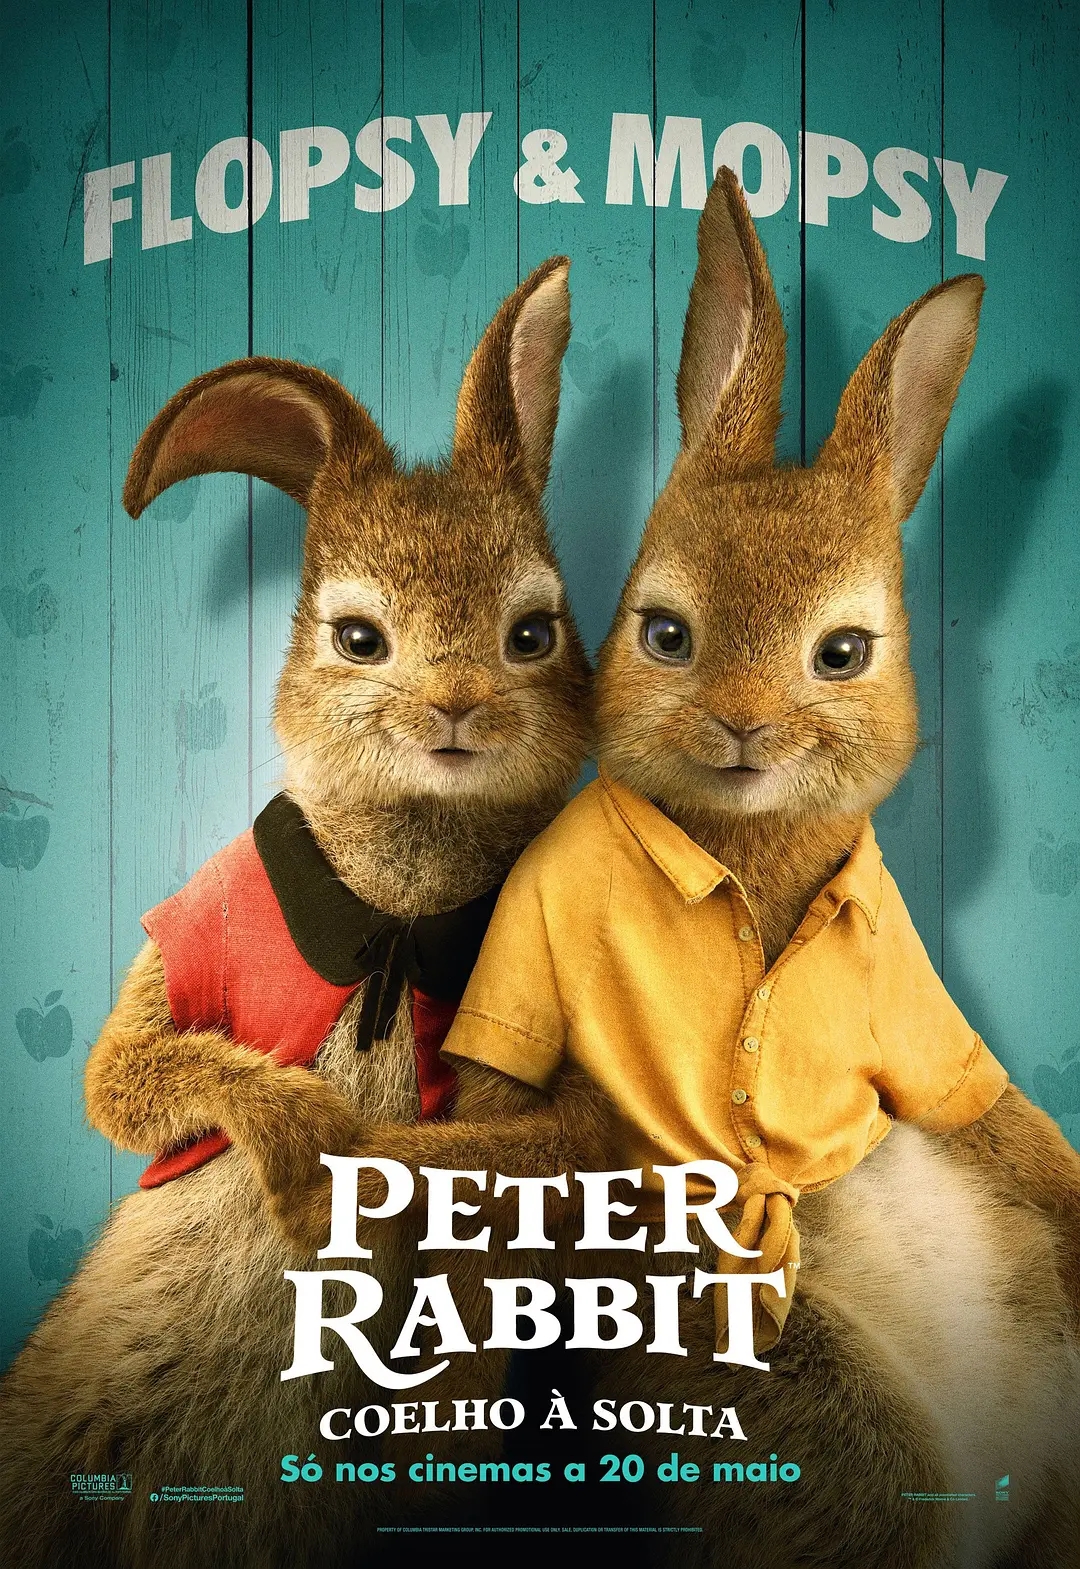 电影《比得兔2：逃跑计划》海报图片